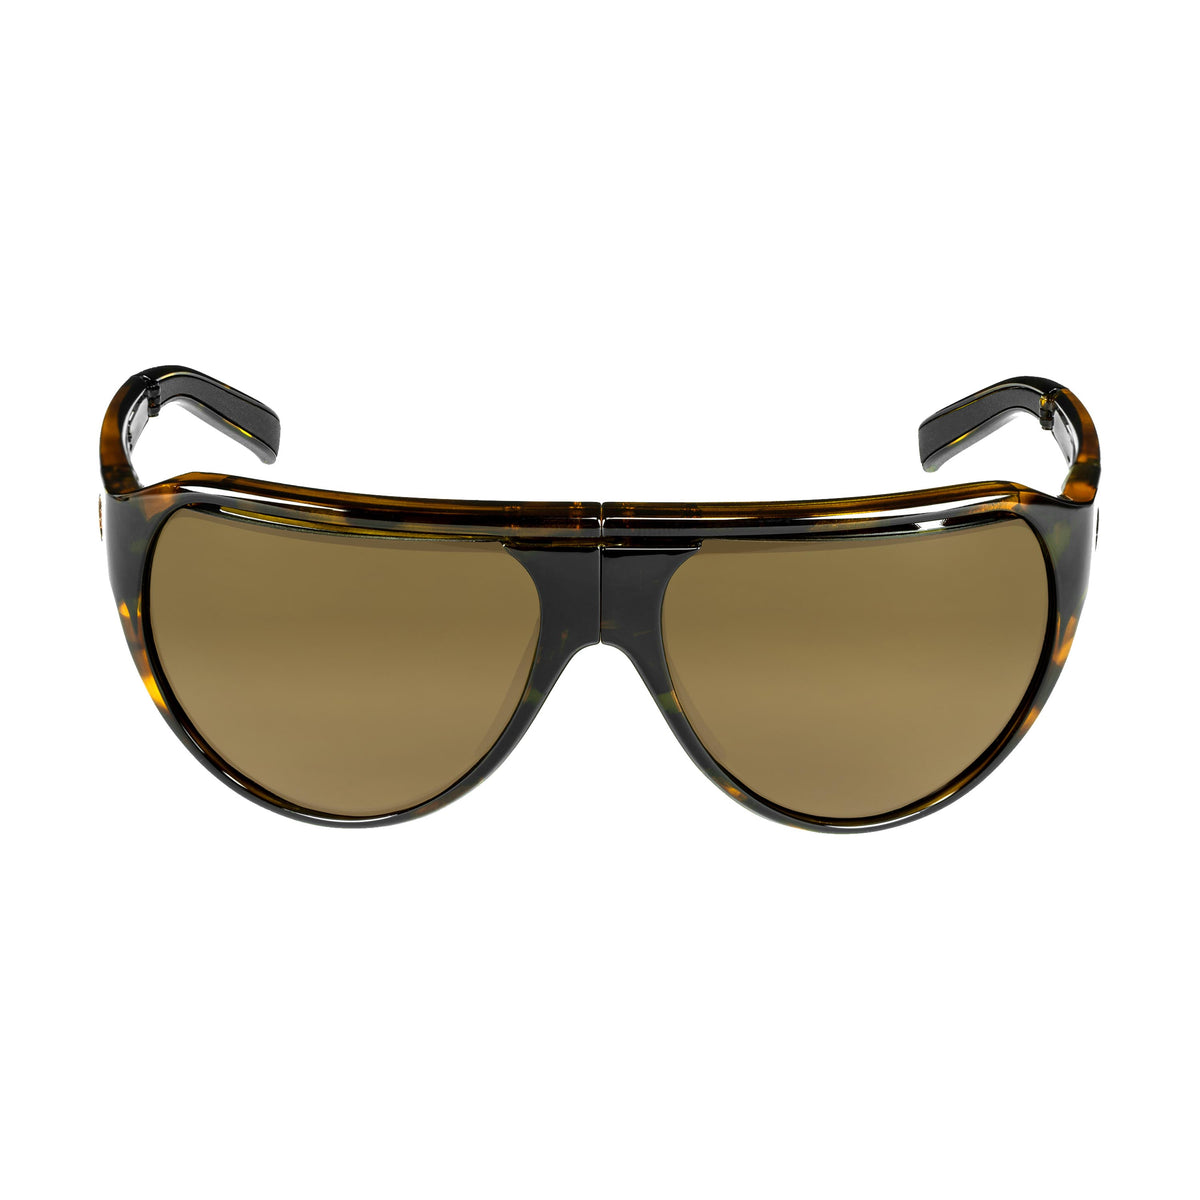 Popticals, Premium Compact Sunglasses, PopAir, 300010-CTNC, Polarized Sunglasses, Gloss Tortoise Frame, Gradient Brown Lenses, Front Tilt View